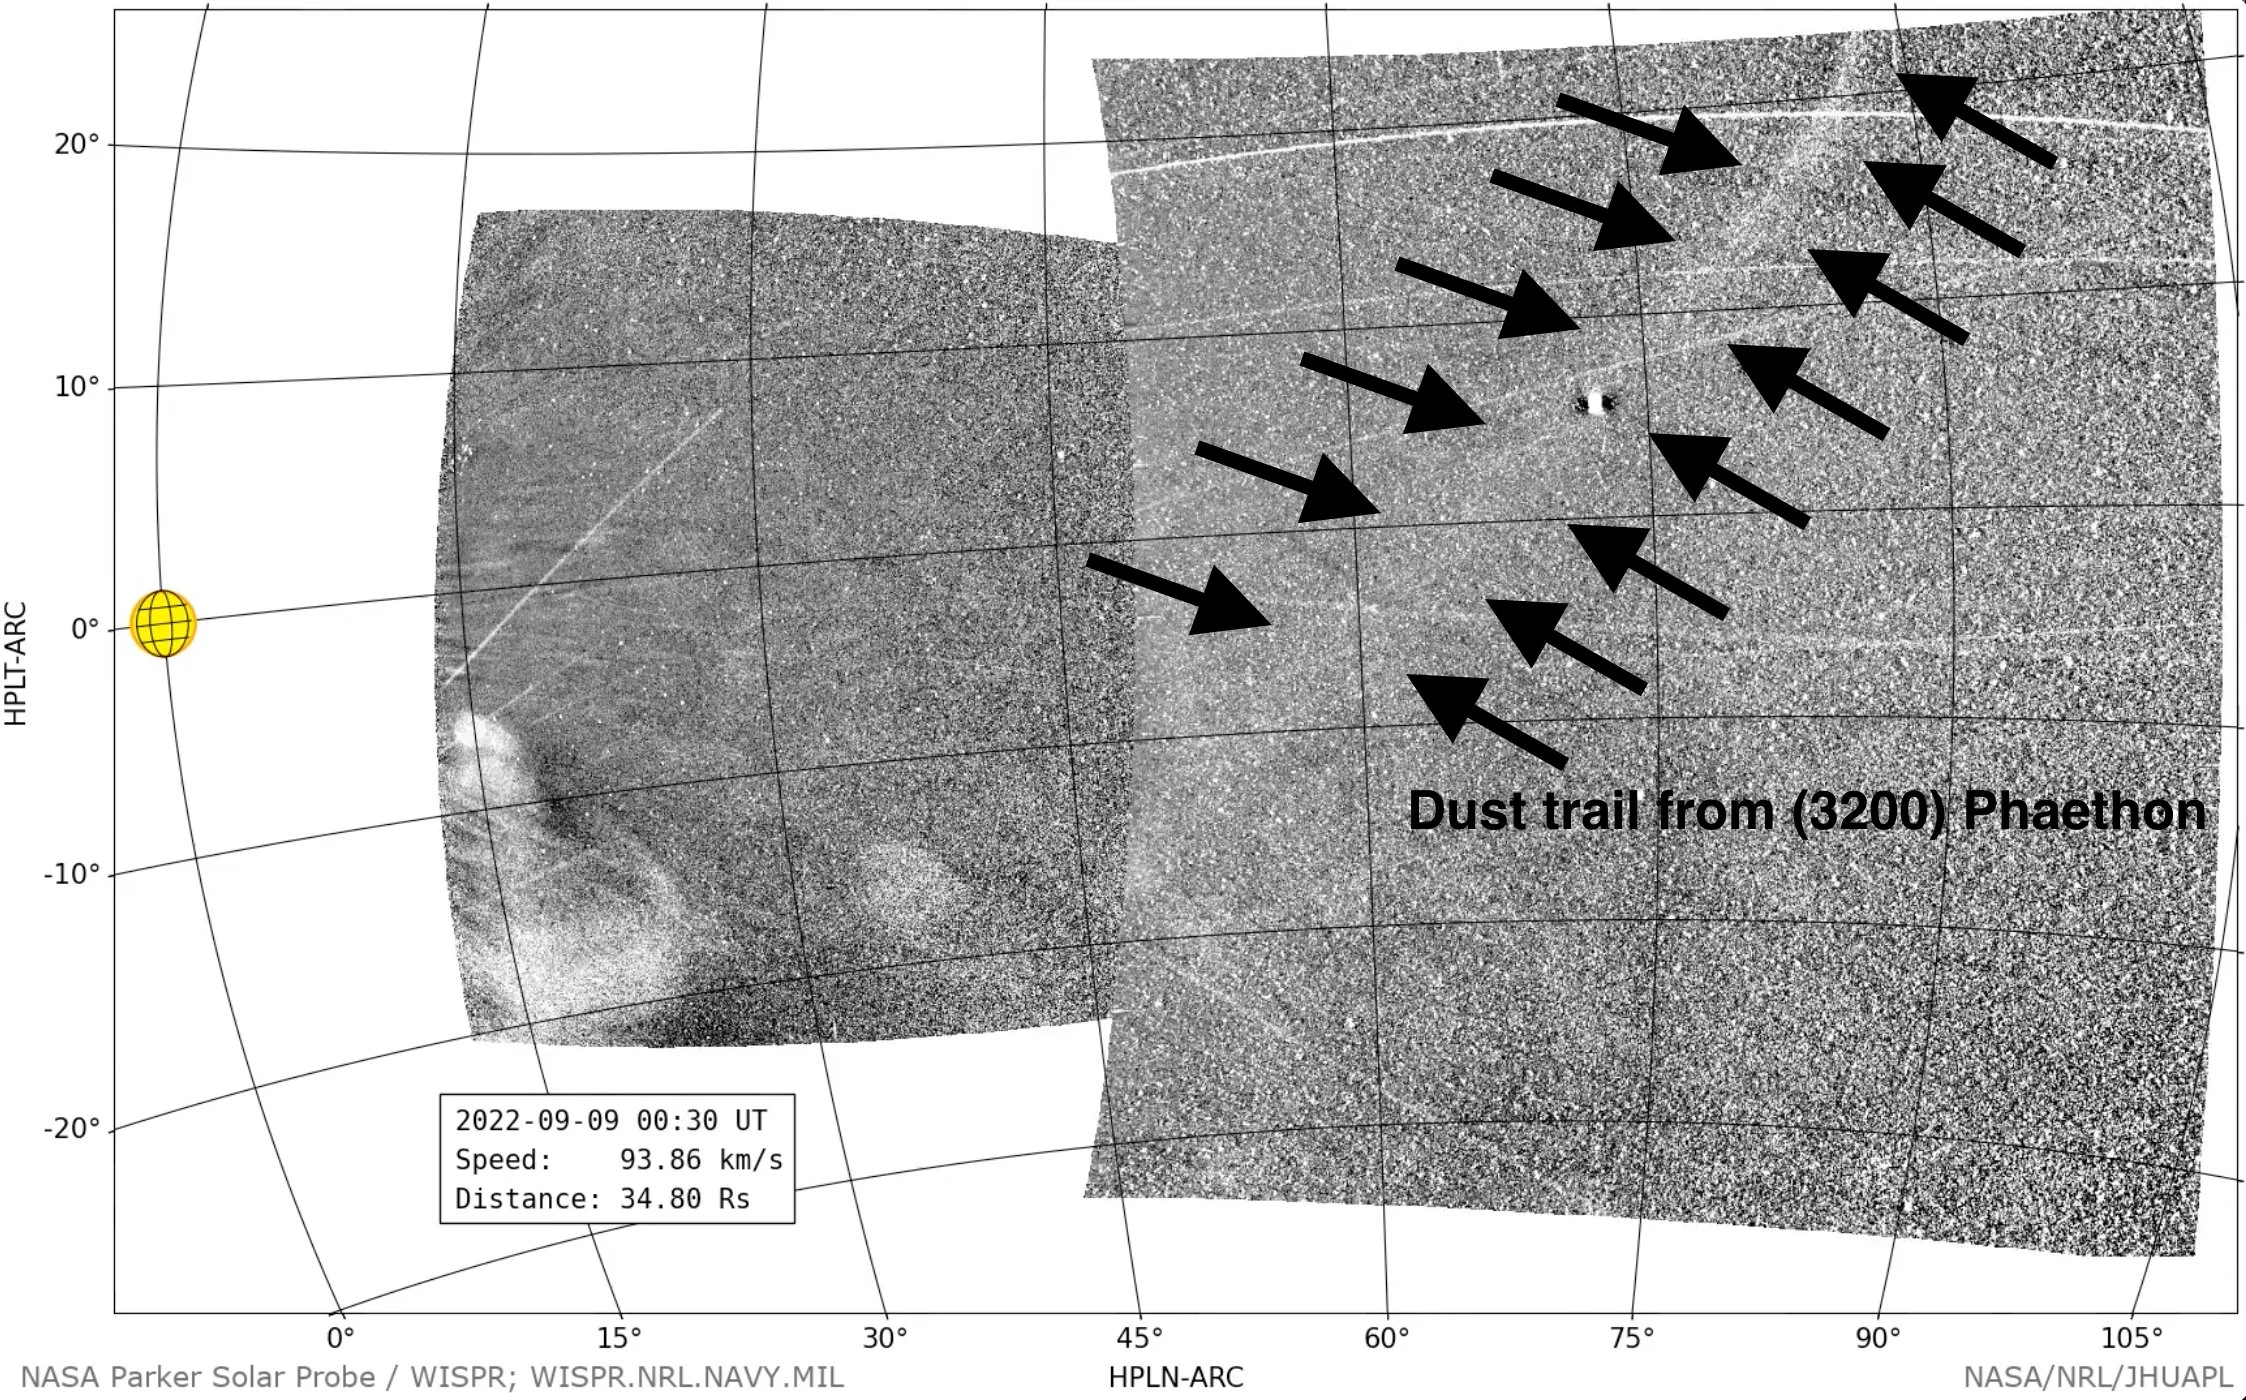 Phaethon Dust Trail 2022 - NASA/NRL/JHUAPL